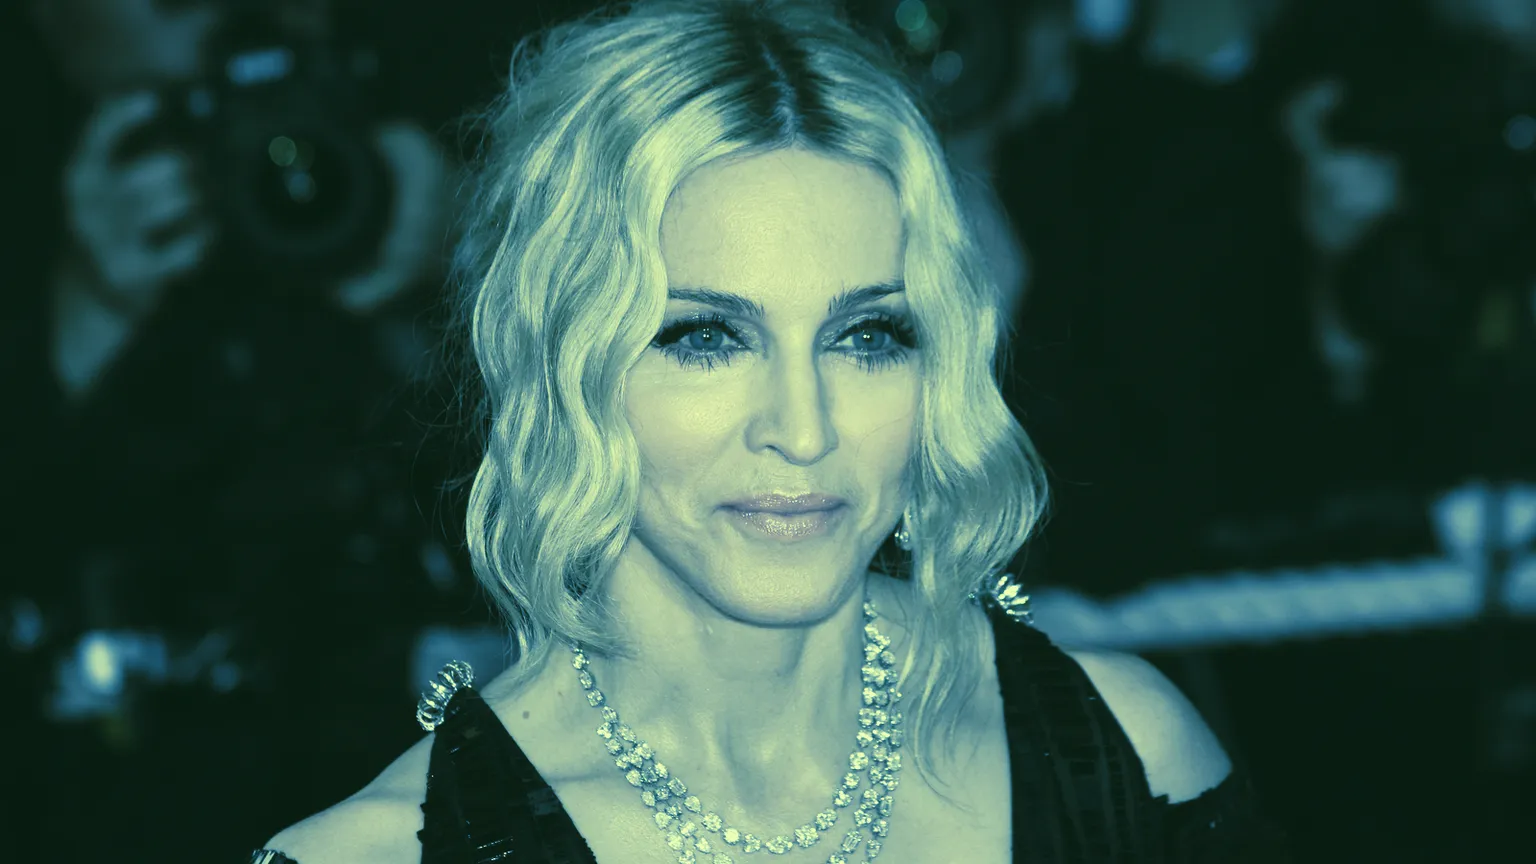 Los hackers subastarán los datos sensibles de Madonna. Imagen: Shutterstock